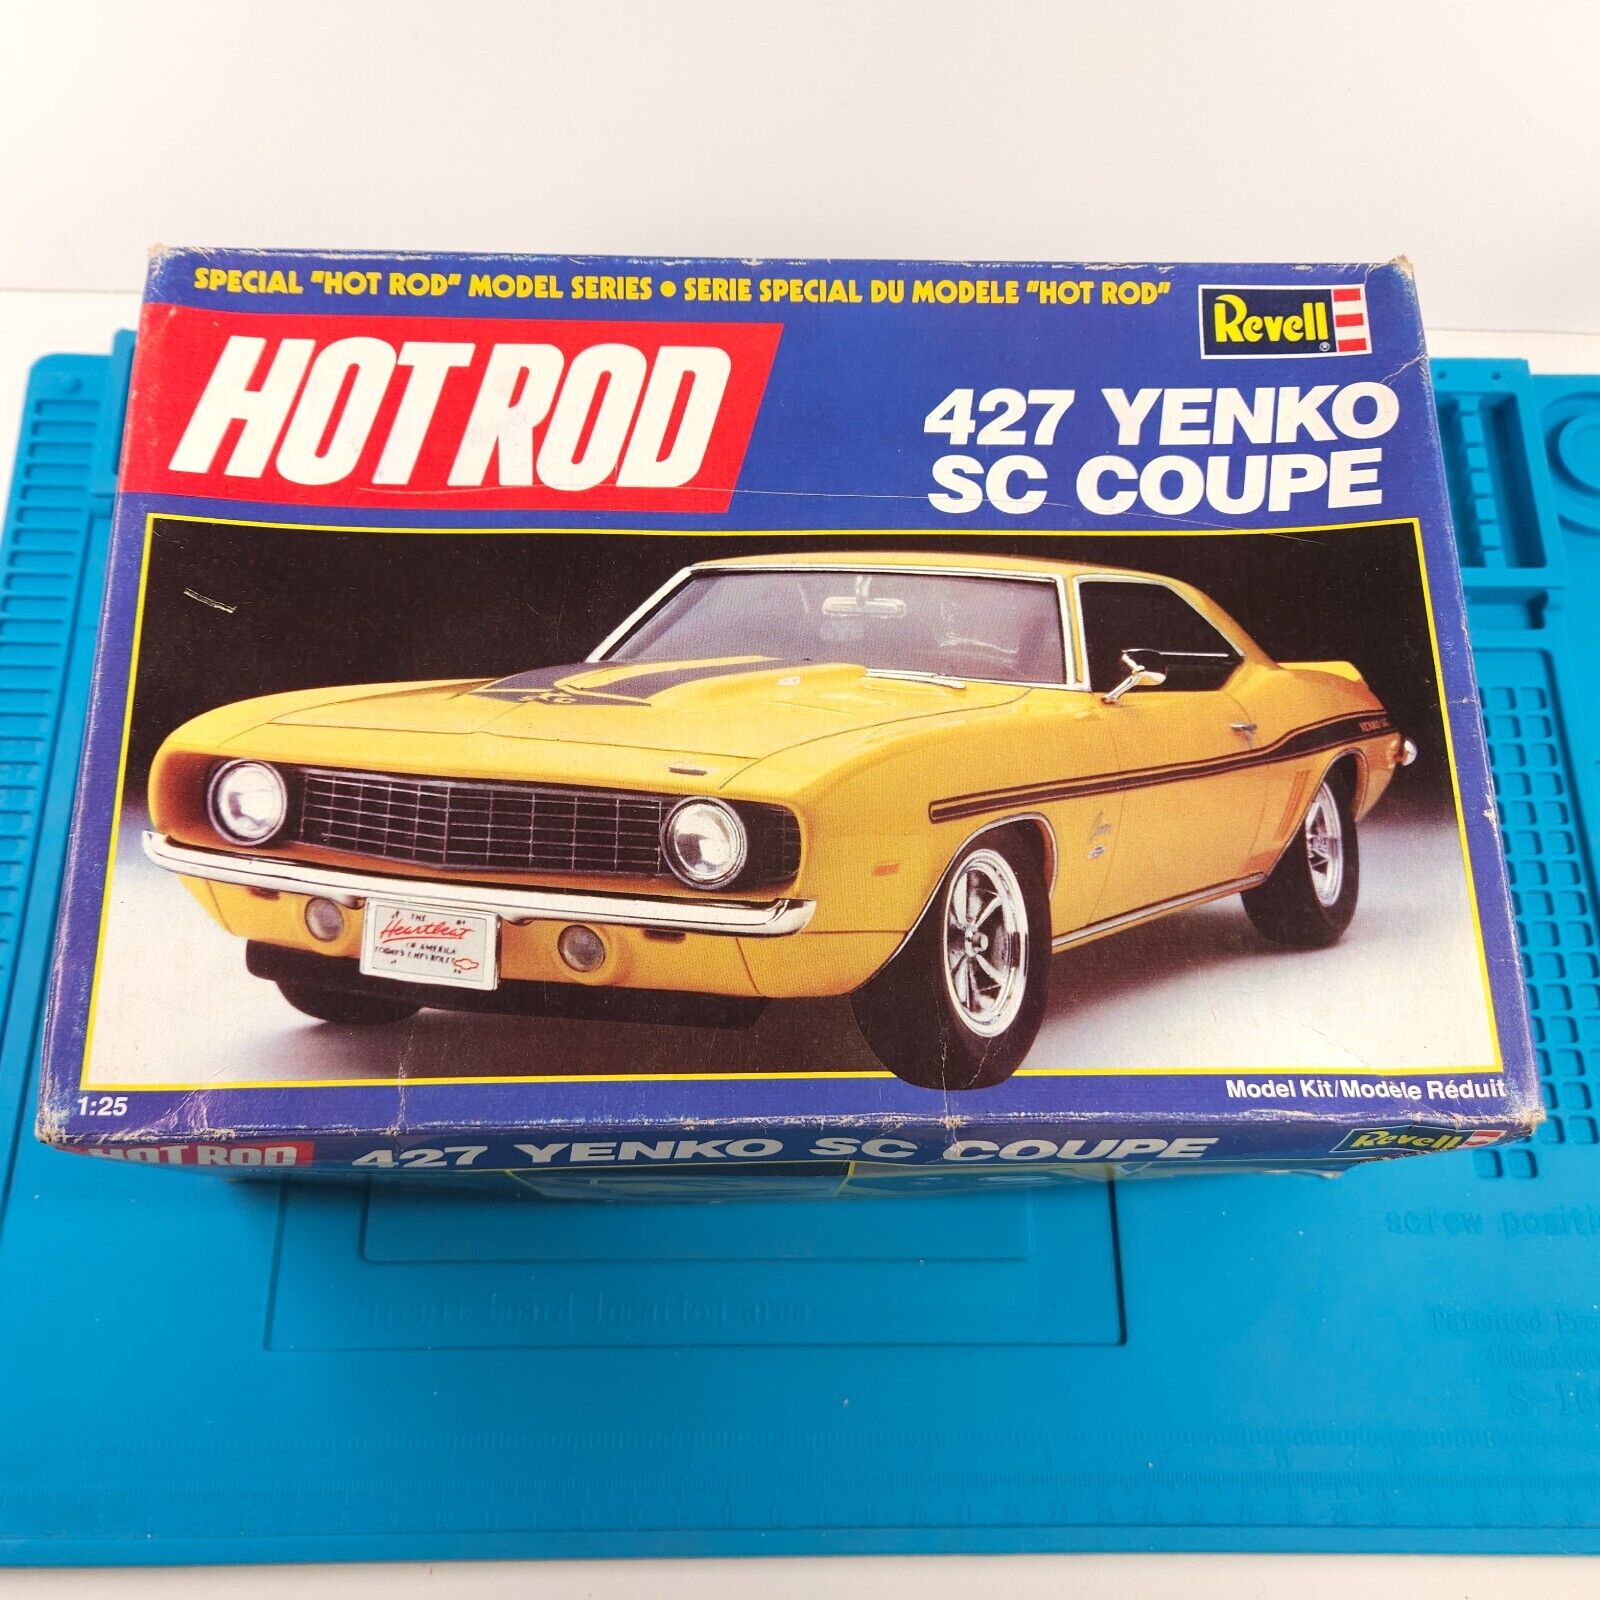 VTG 1990 REVELL 1969 427 Yenko SC Camaro 1/25 Scale Plastic Model Kit #7132